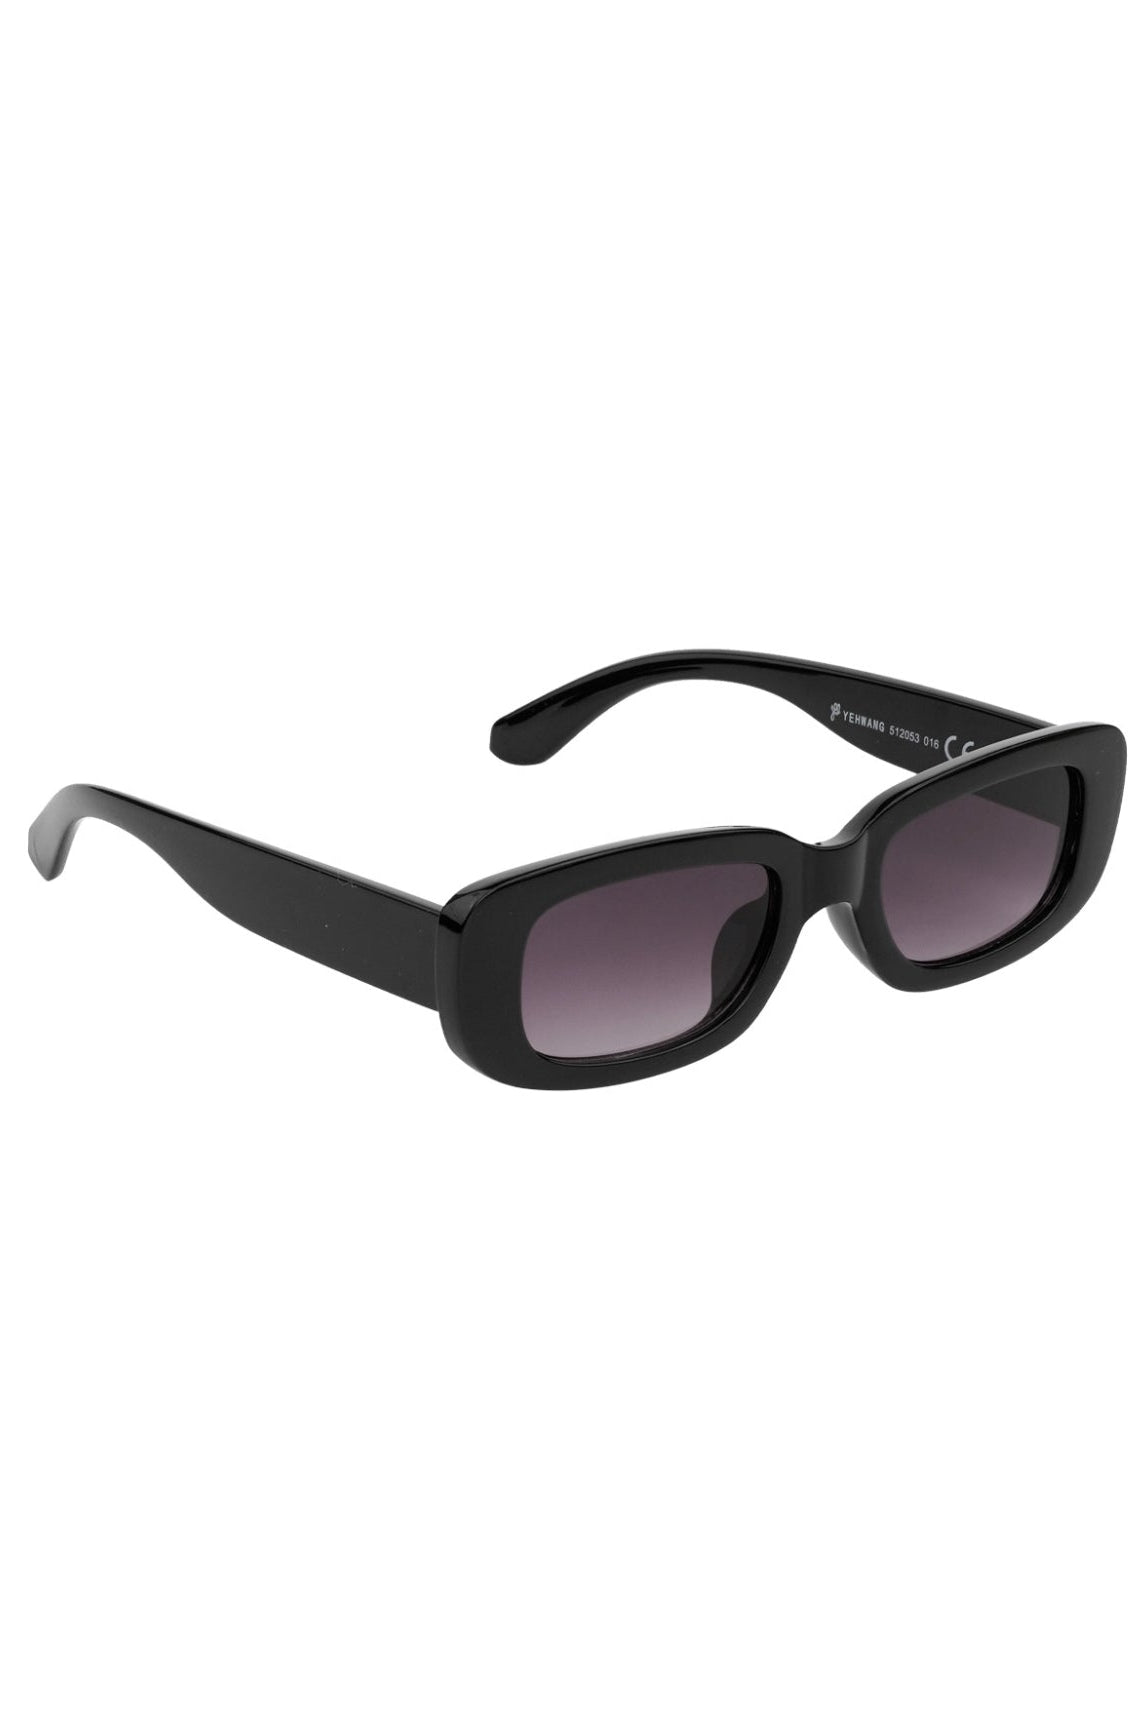 Simple retro black sunglasses -